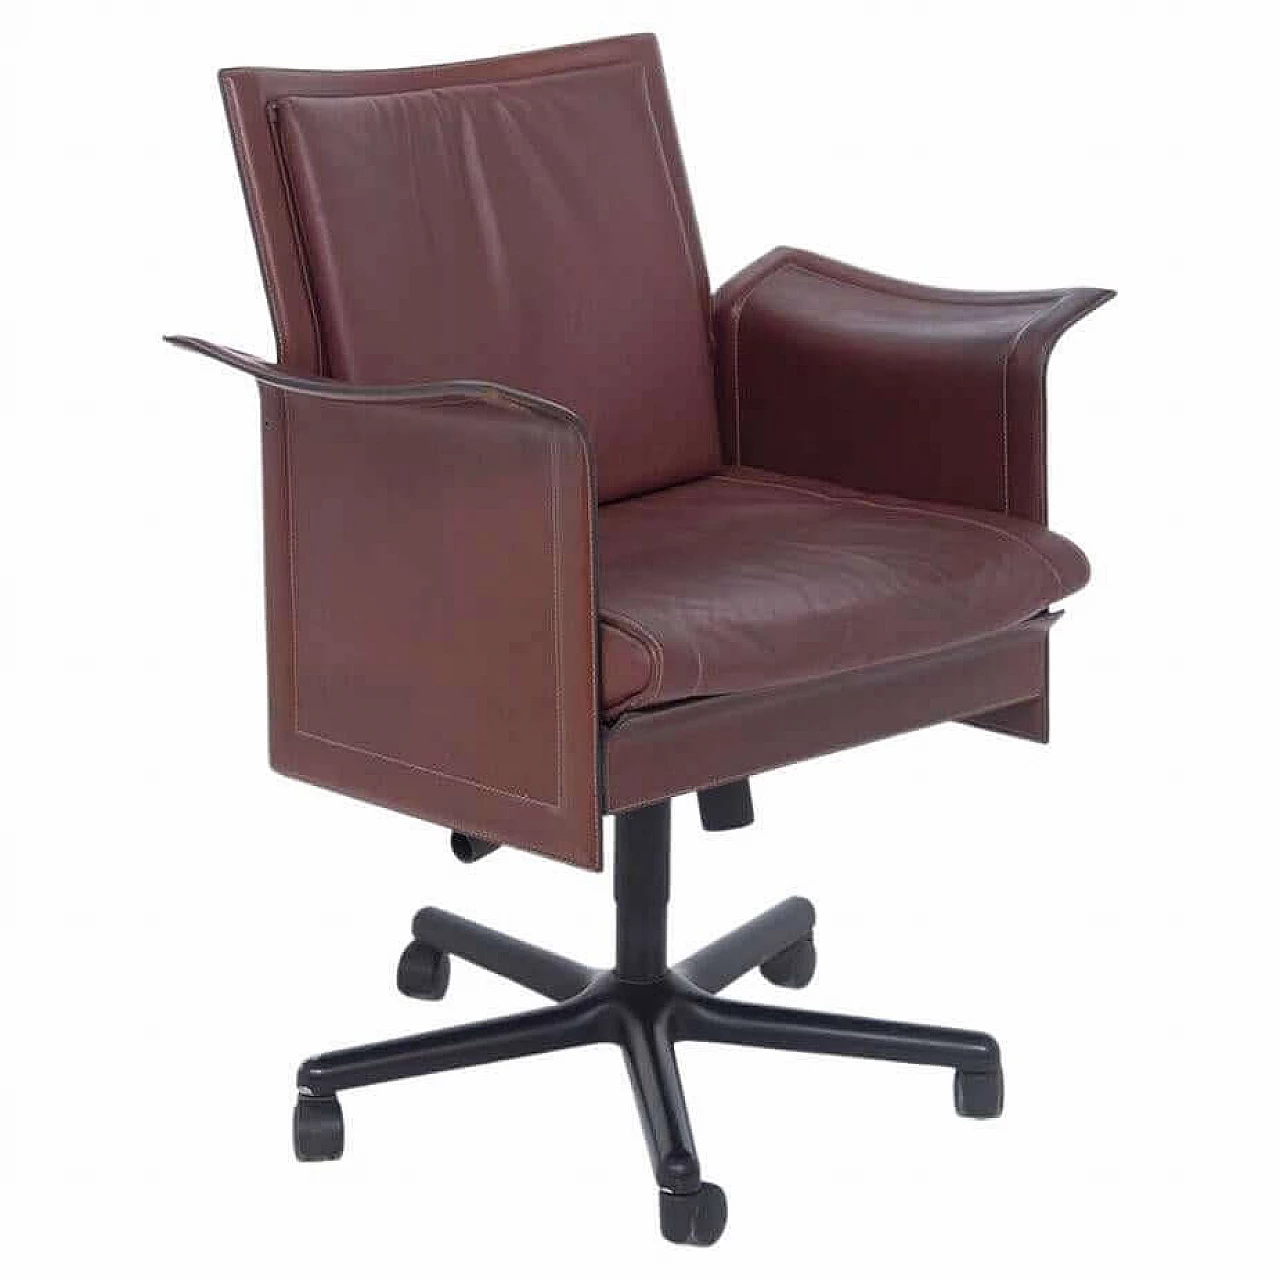 Tito Agnoli for Matteograssi desk armchair Korium in leather, 1970s 1386491